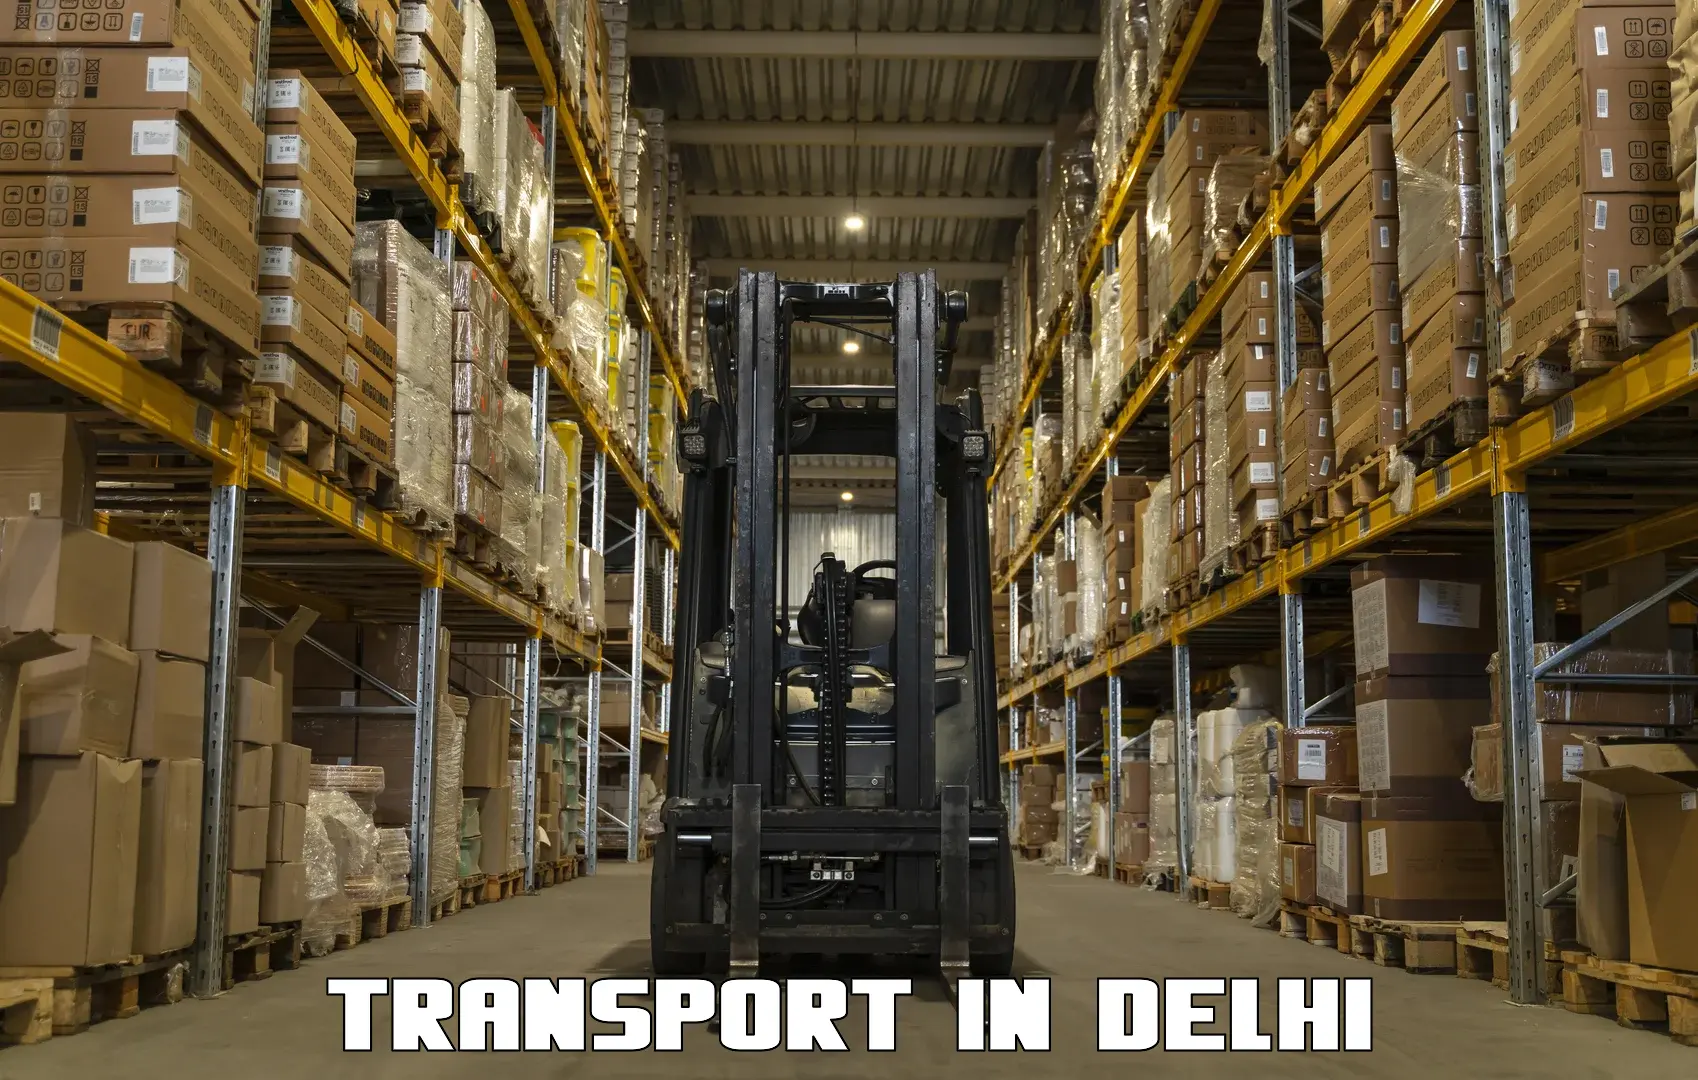 Transportation services in Delhi